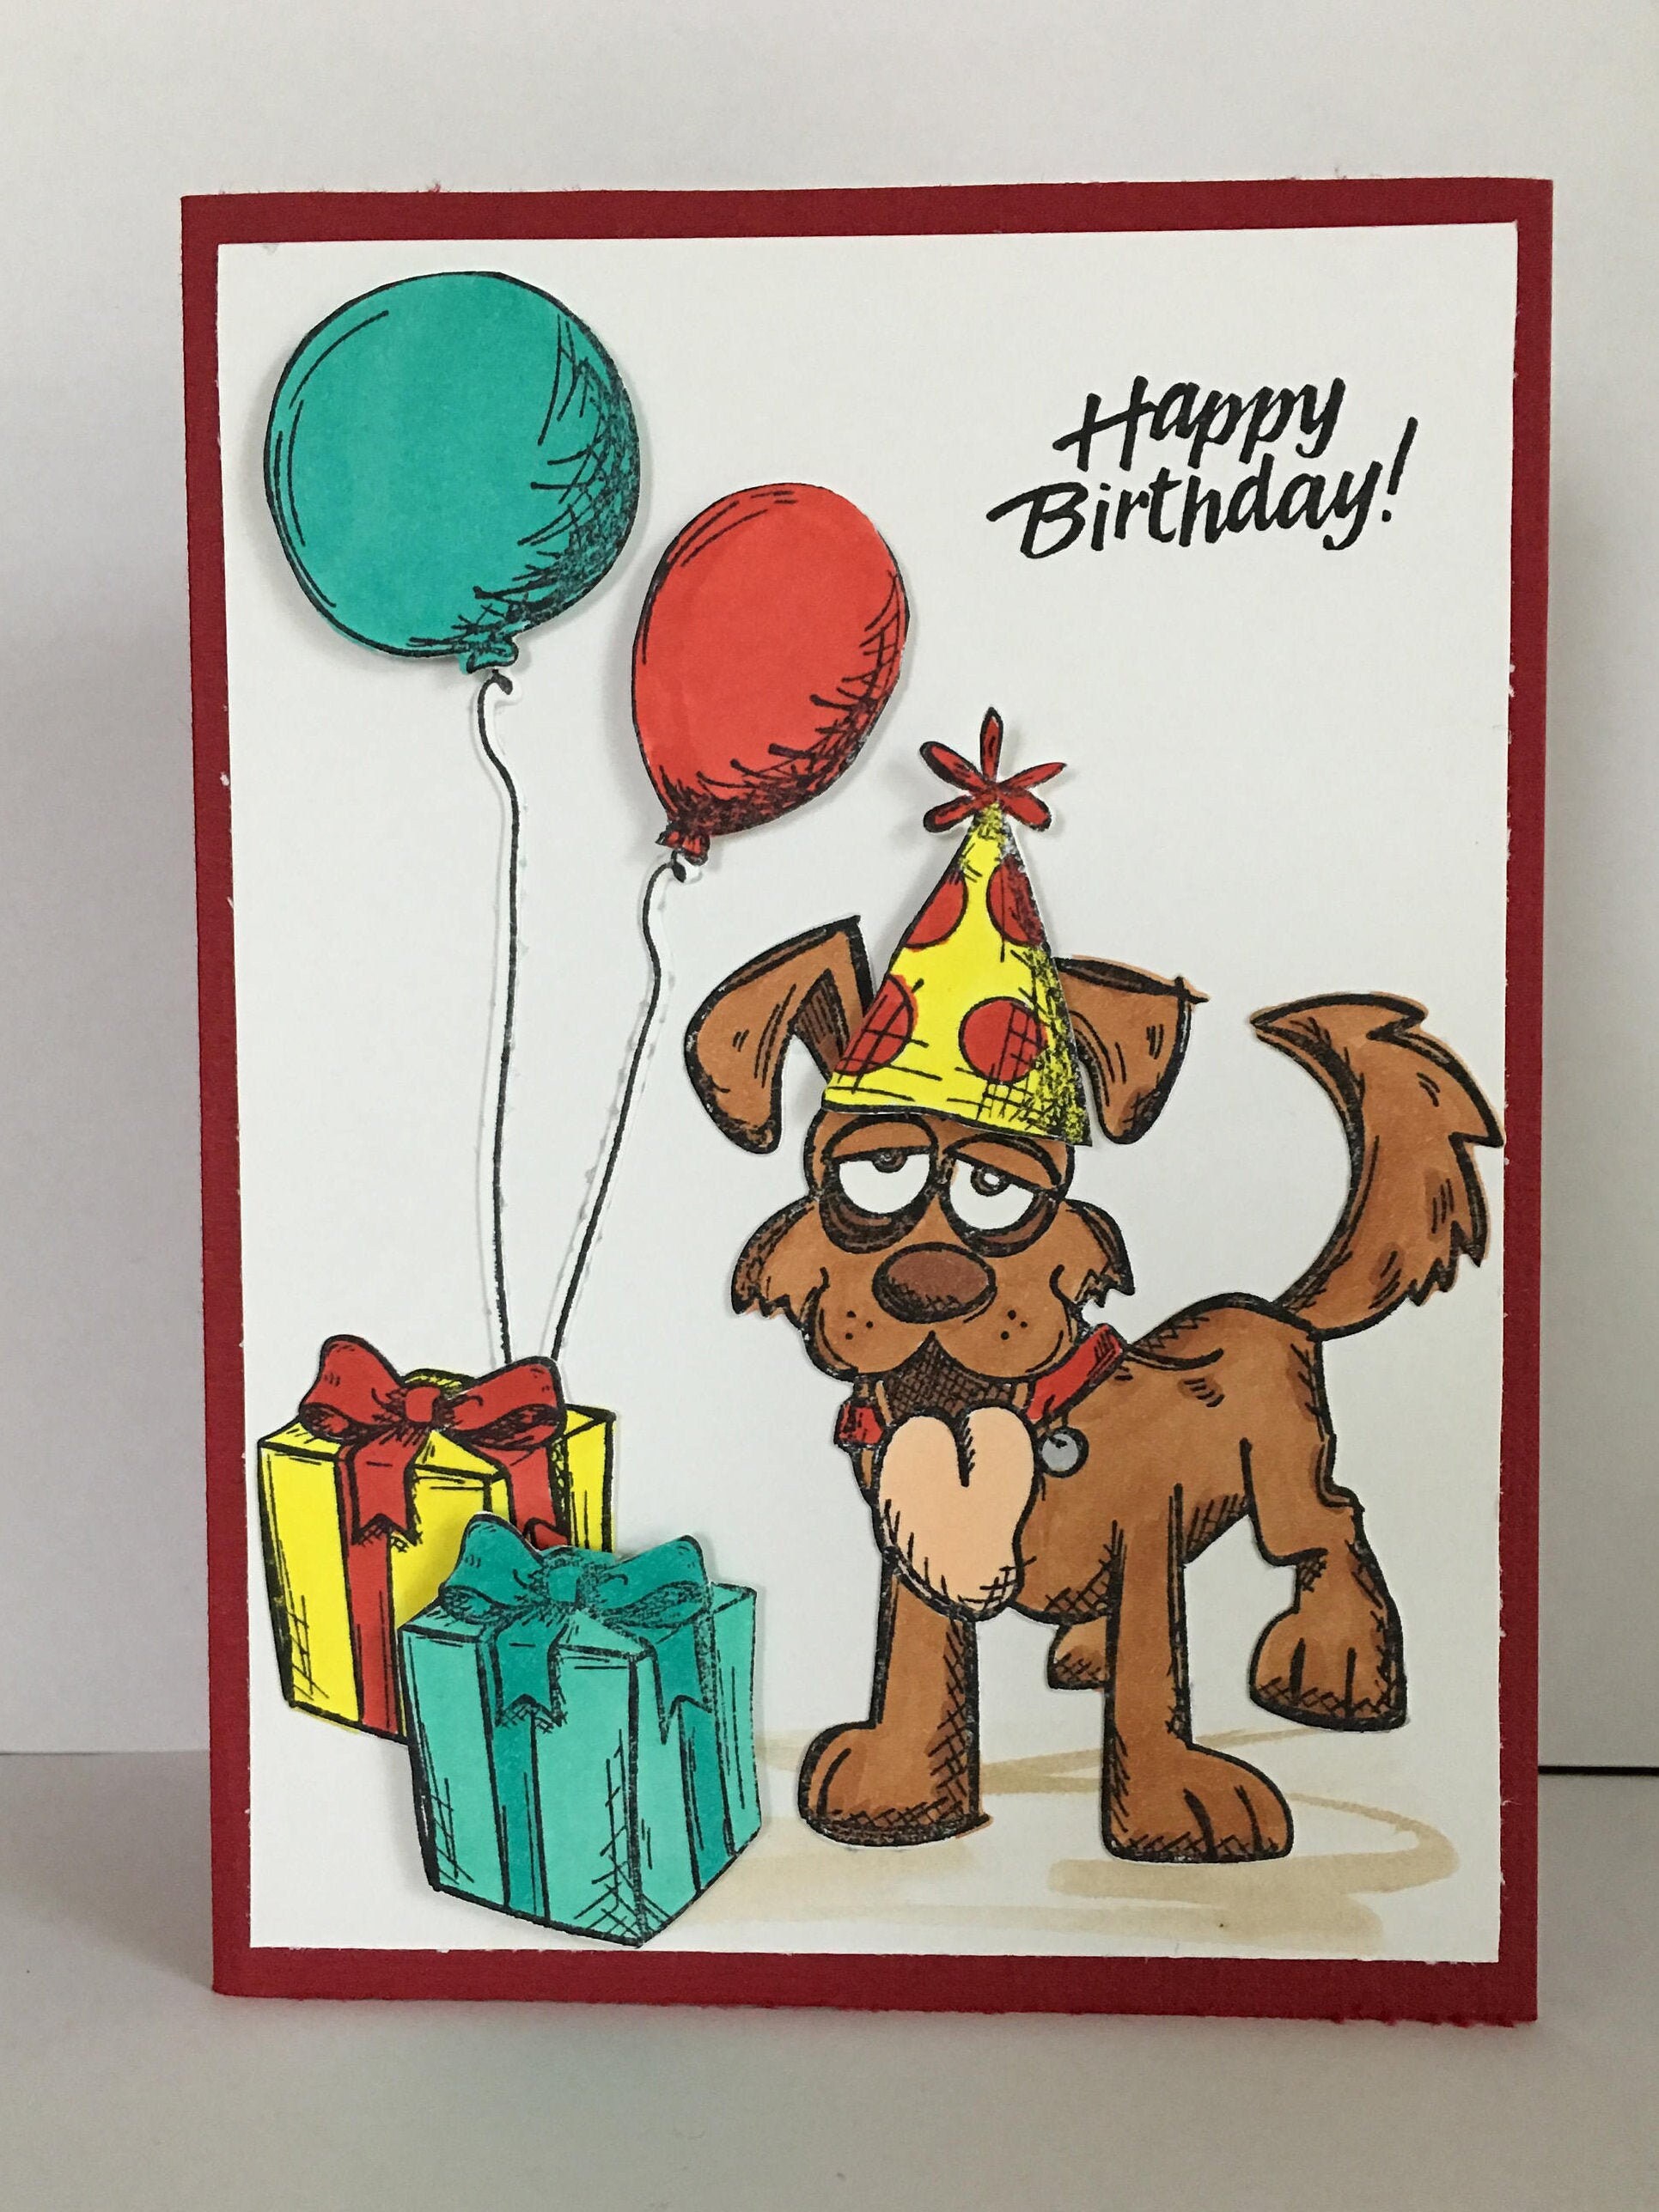 funny birthday wishes dog